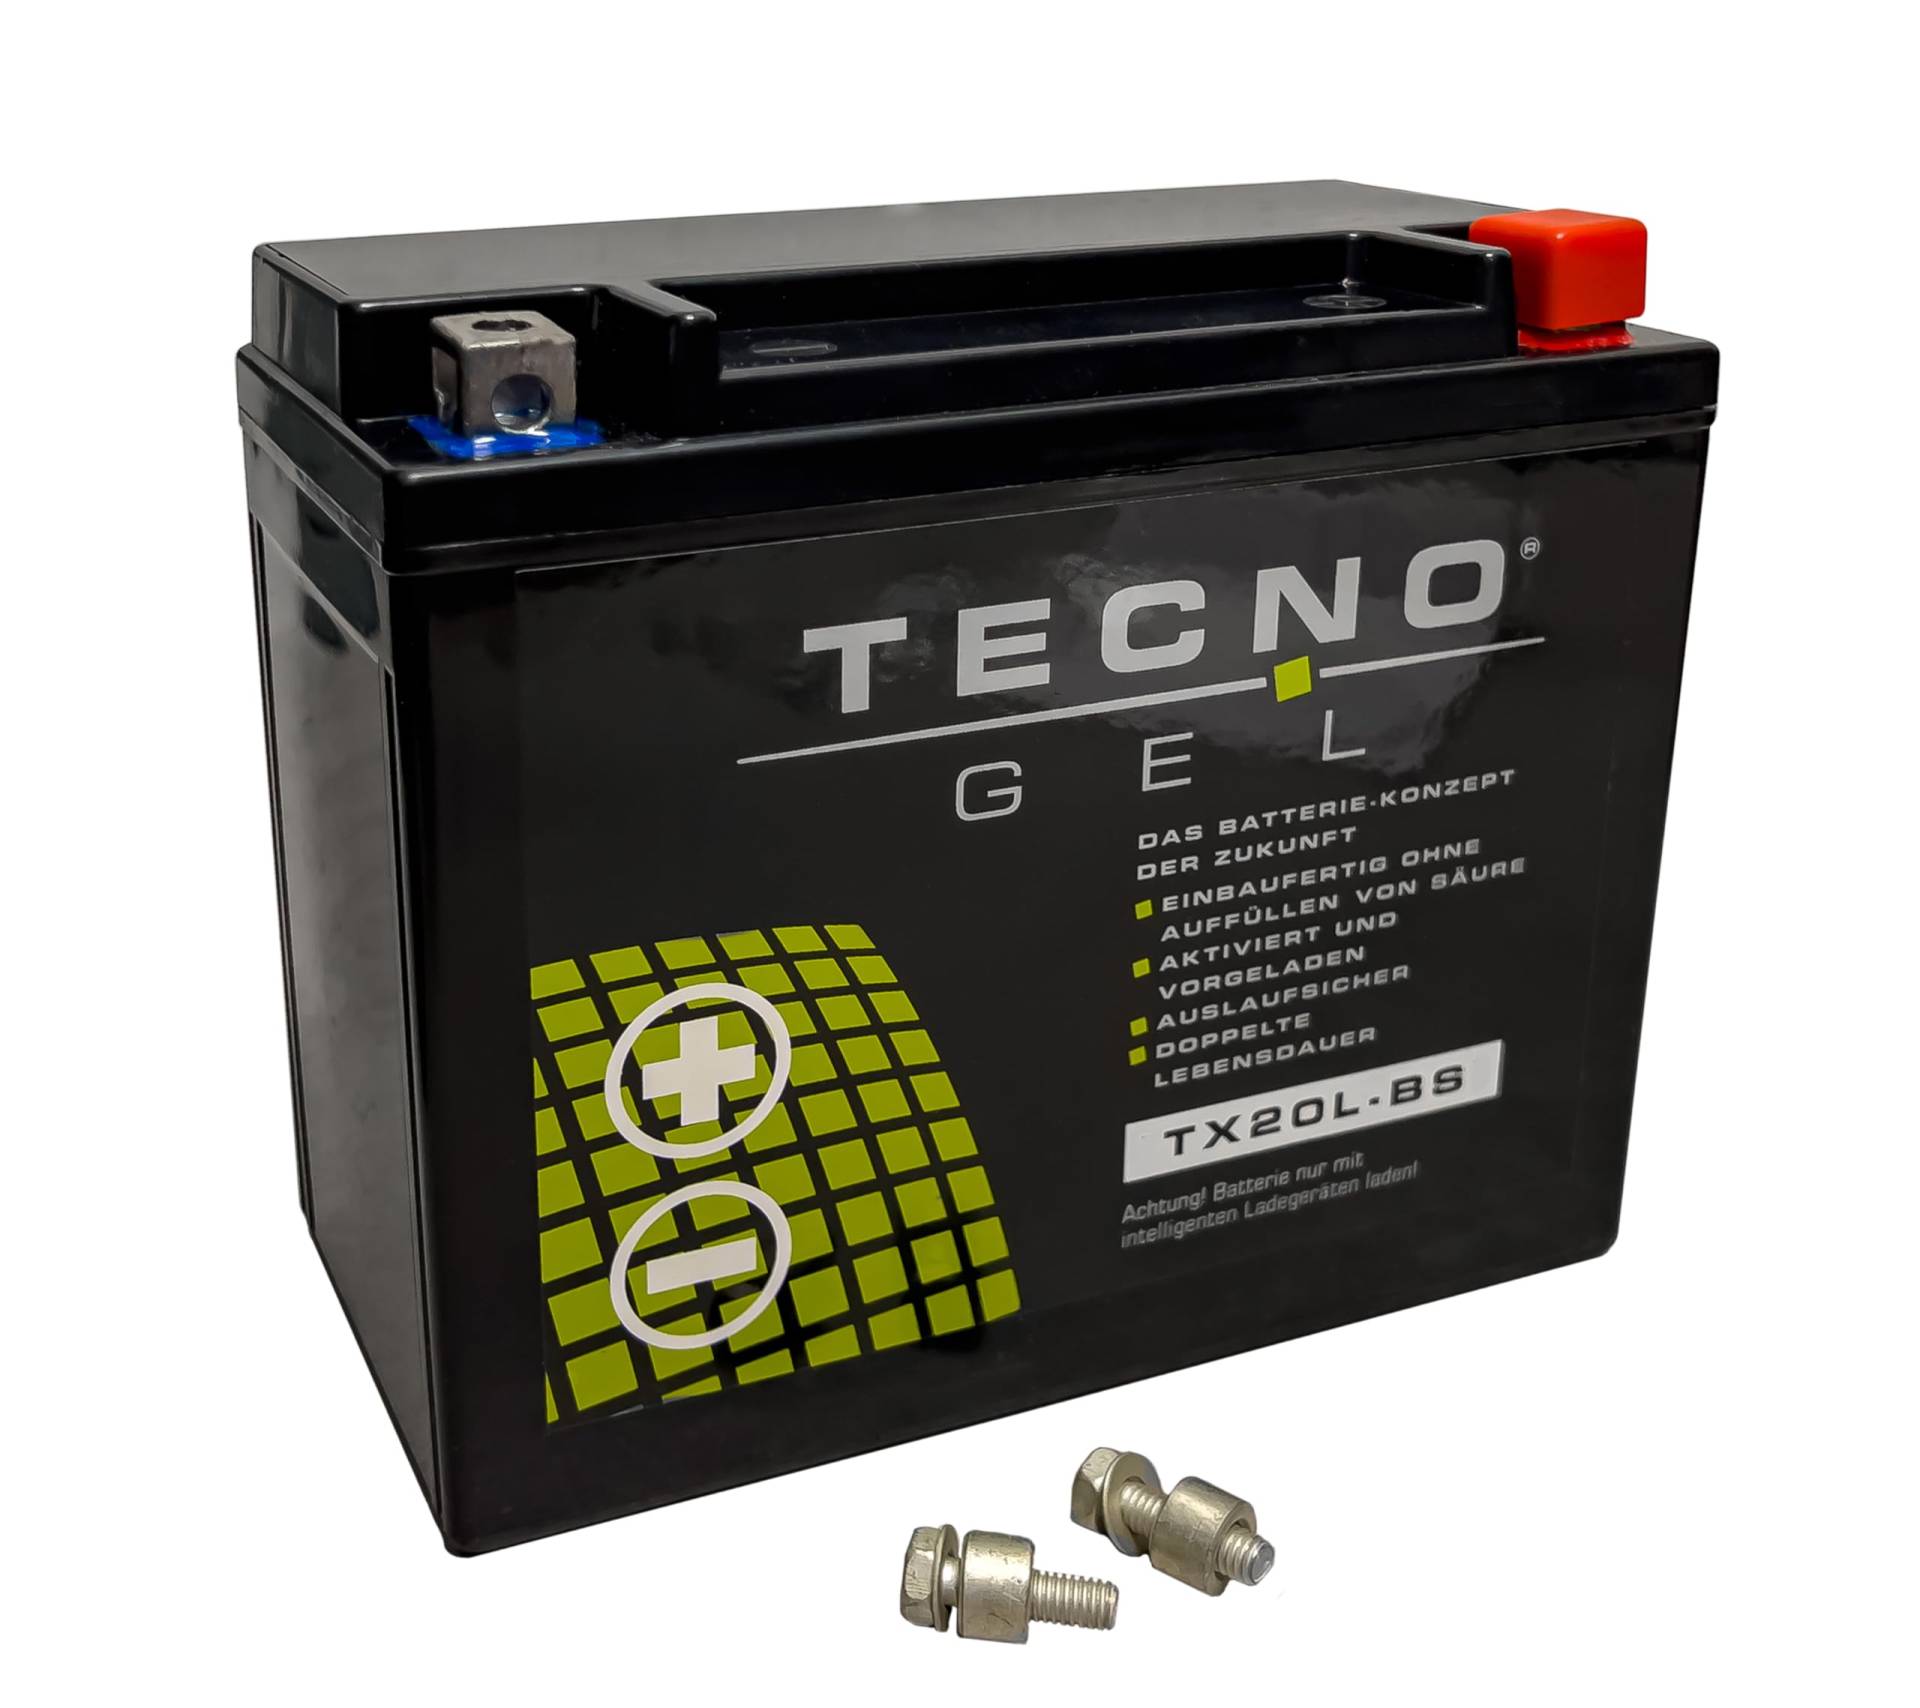 TECNO-GEL Motorrad-Batterie für YTX20L-BS für BOMBARDIER Outlander 400/800 12V Gel-Batterie 20Ah (DIN 82000), 175x87x155 mm von Wirth-Federn